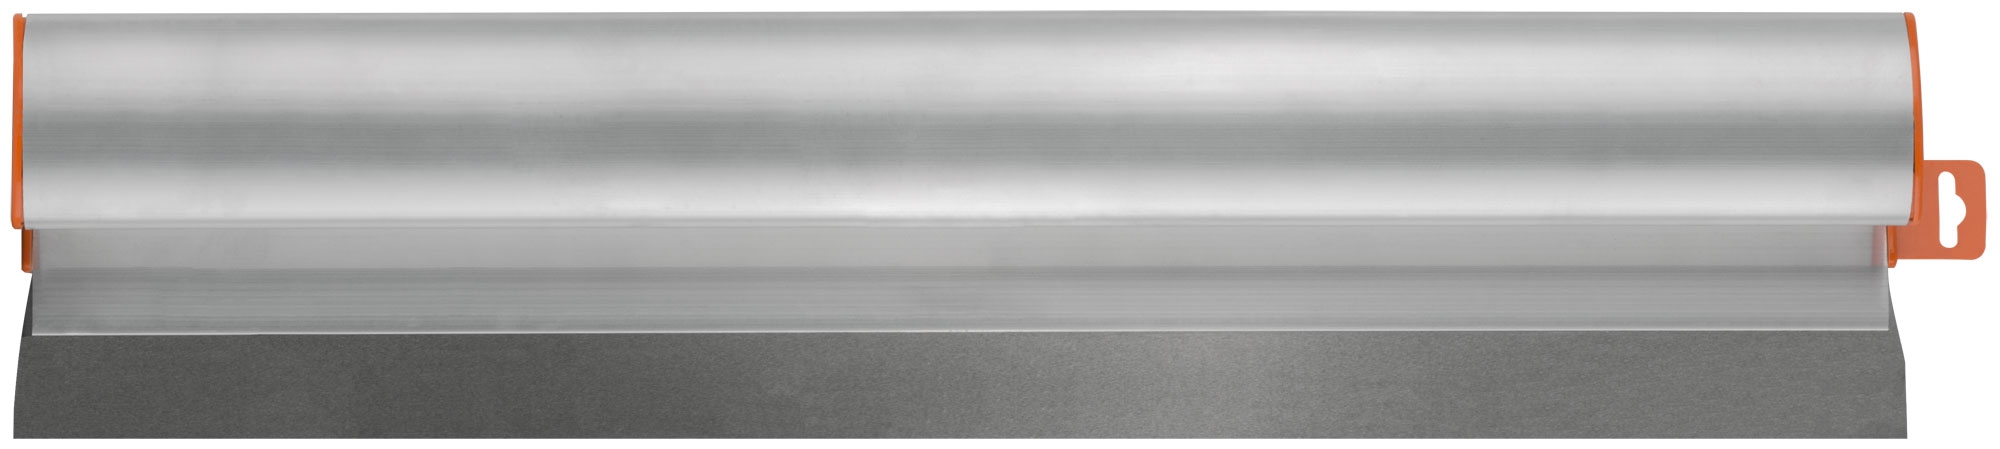 Шпатель-Правило Профи, нержавеющая сталь с алюминиевой ручкой 600 мм шпатель правило hesler 300 мм с алюминиевой ручкой